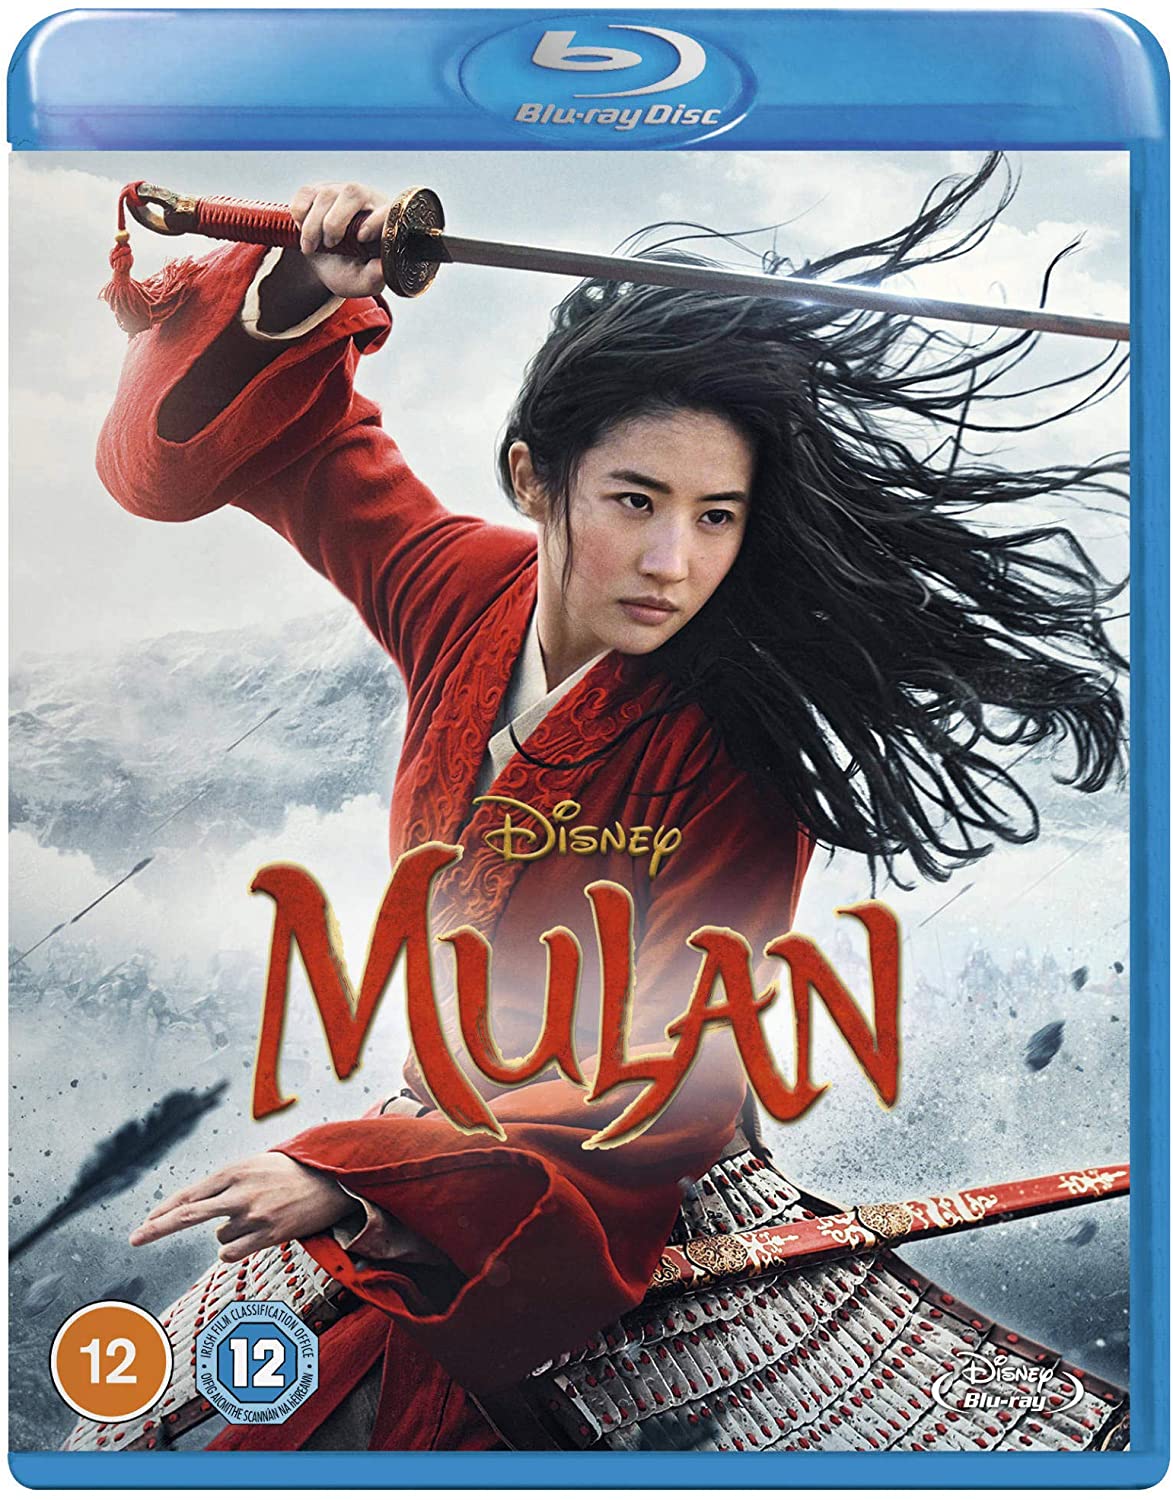 Stiahni si HD Filmy Mulan (2020)(CZ/EN)[1080pHD]  = CSFD 57%